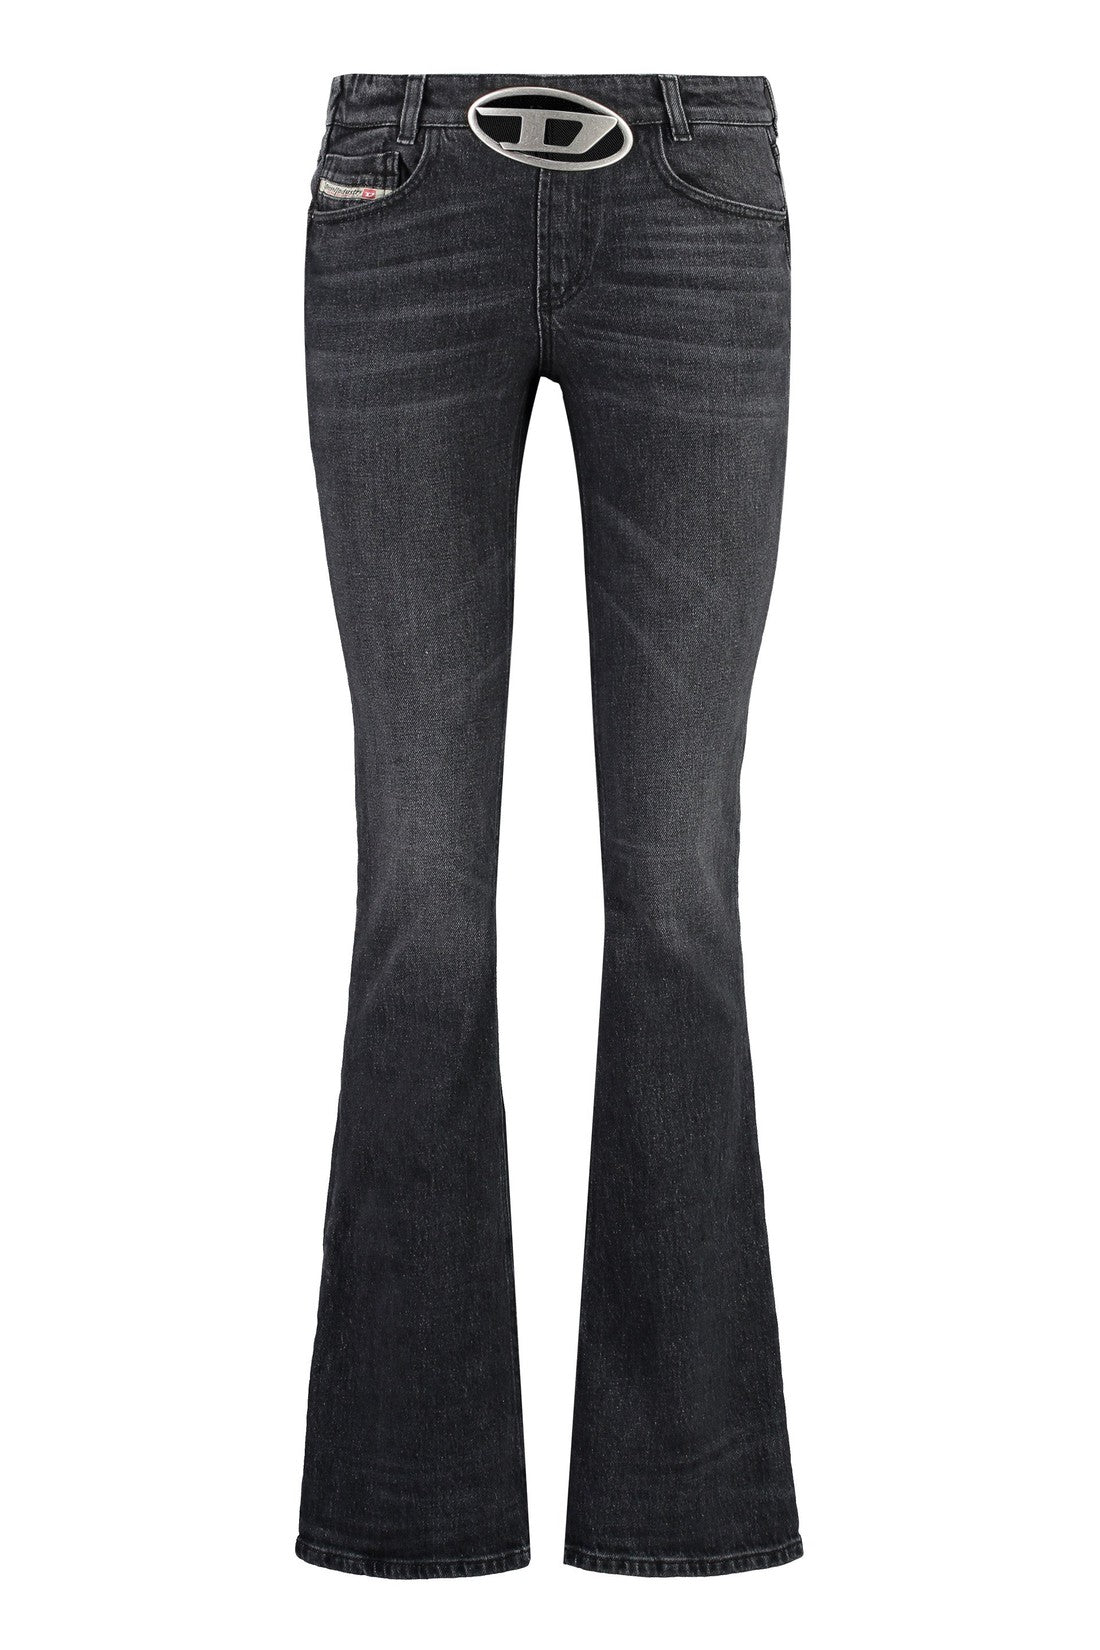 DIESEL-OUTLET-SALE-1969 D-Ebbey bootcut jeans-ARCHIVIST